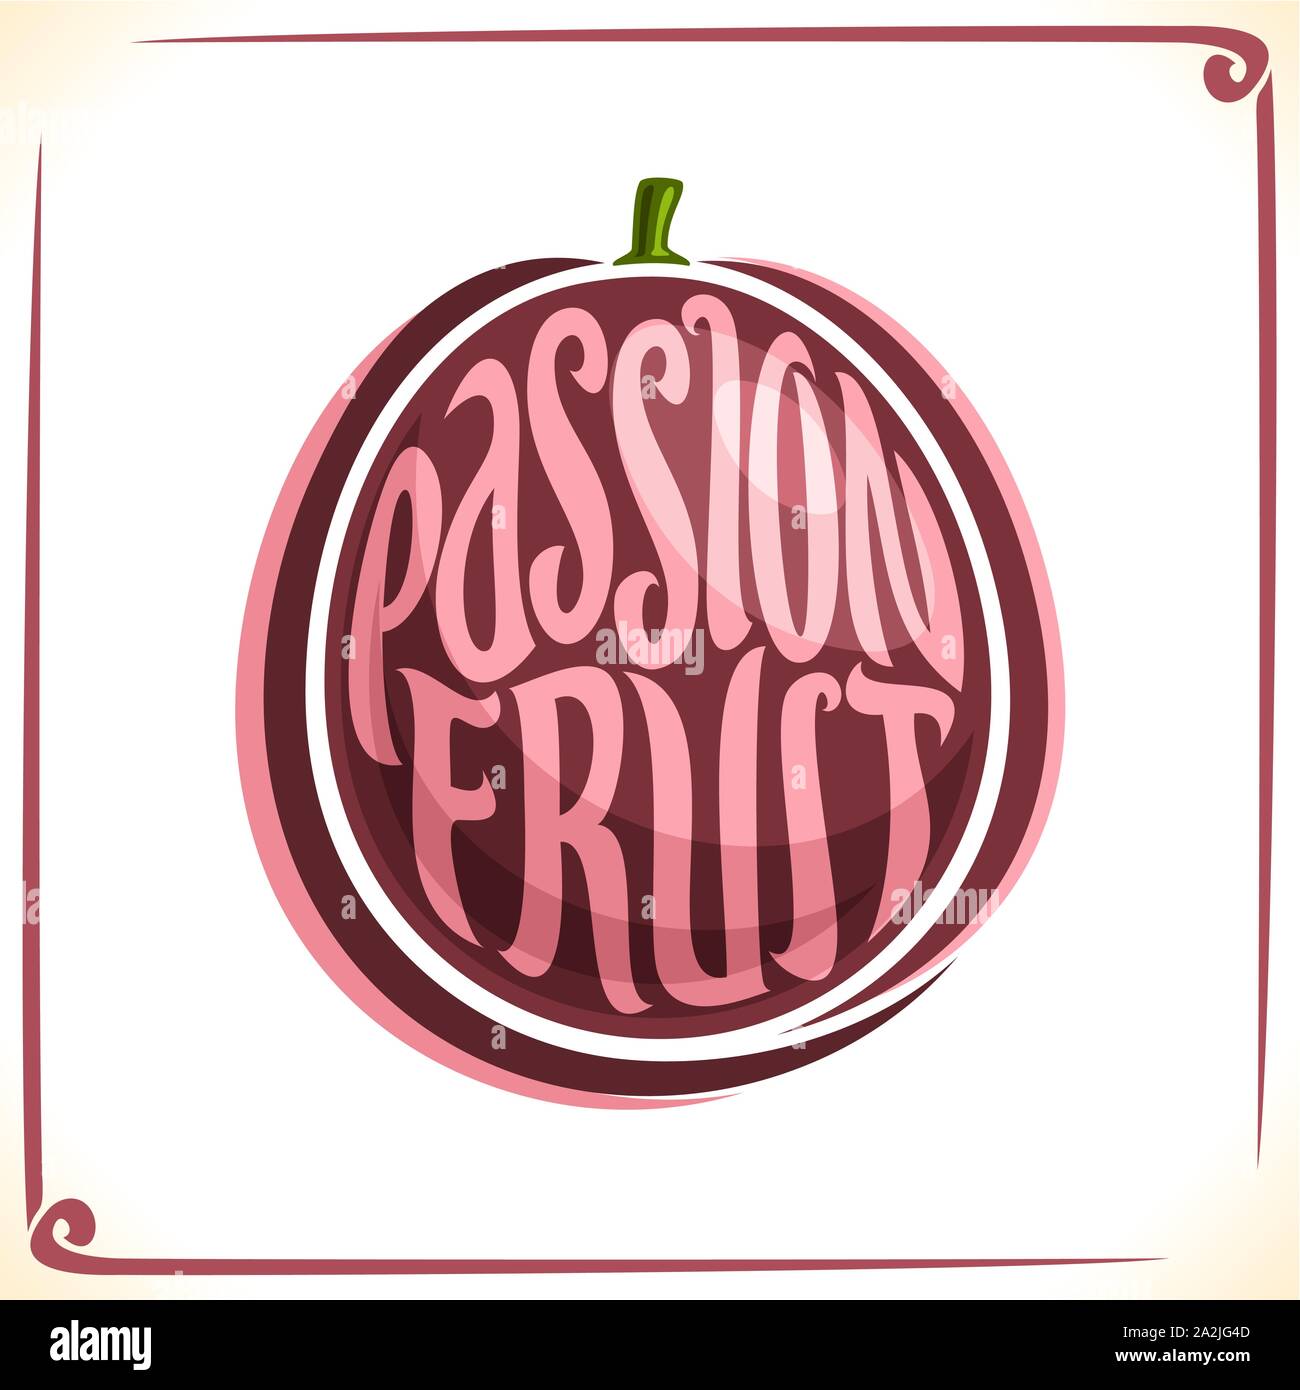 Logo Vector pour les fruits de la passion, l'étiquette avec un fruit entier pour l'ensemble de jus frais ou dessert, étiquette de prix avec des mots d'origine de la police les fruits de la passion Illustration de Vecteur